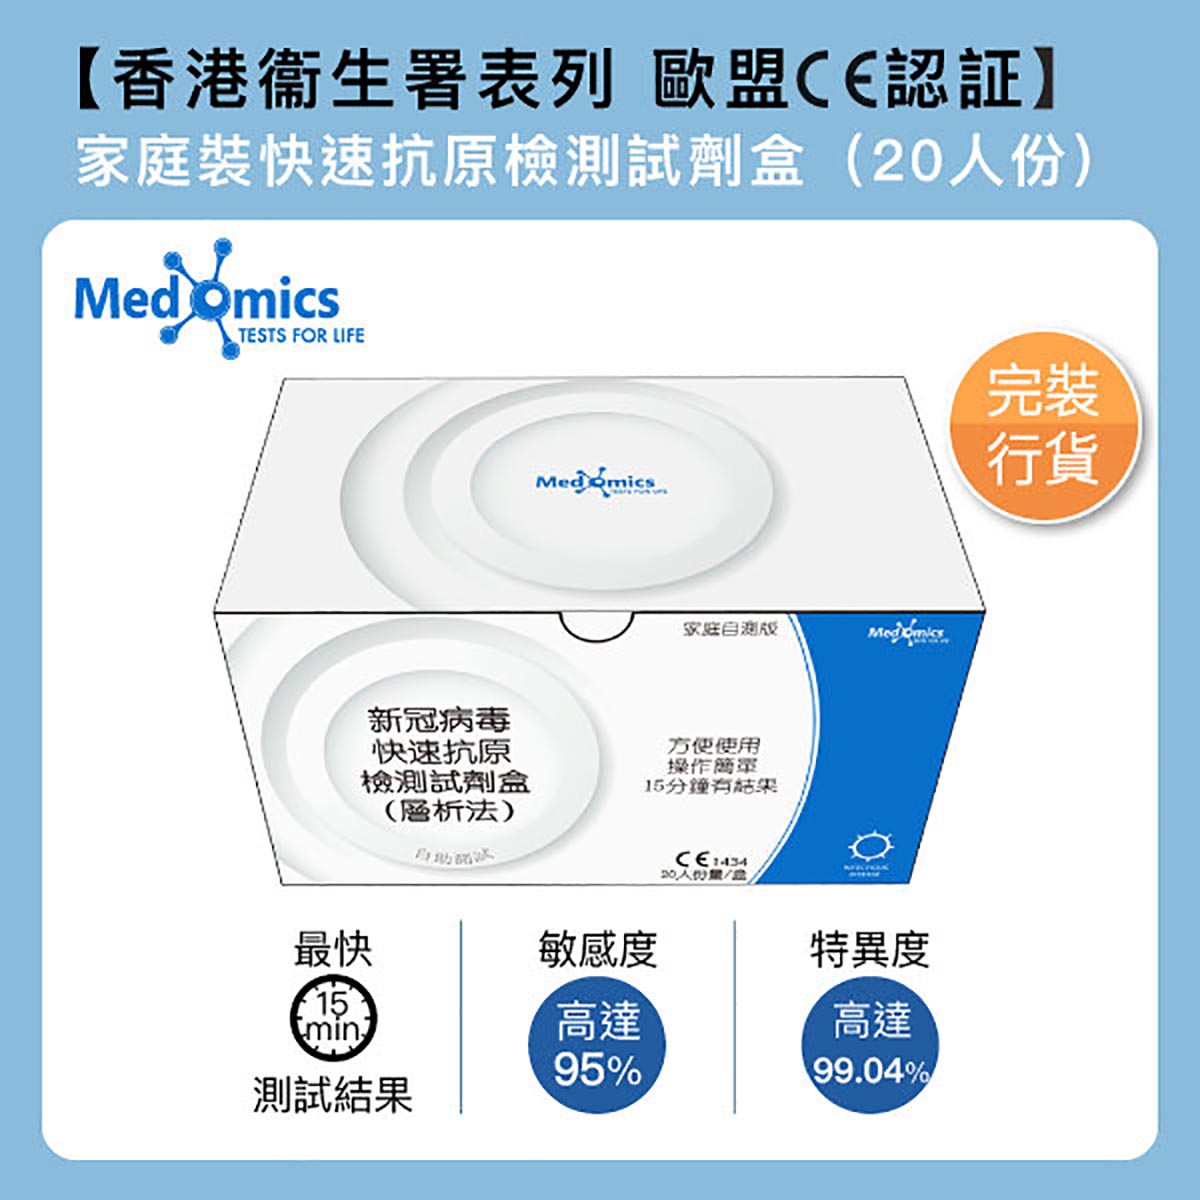 Medomics 新冠病毒快速抗原檢測試劑盒 (層析法) - 家庭自測版(中英文版隨機發送)